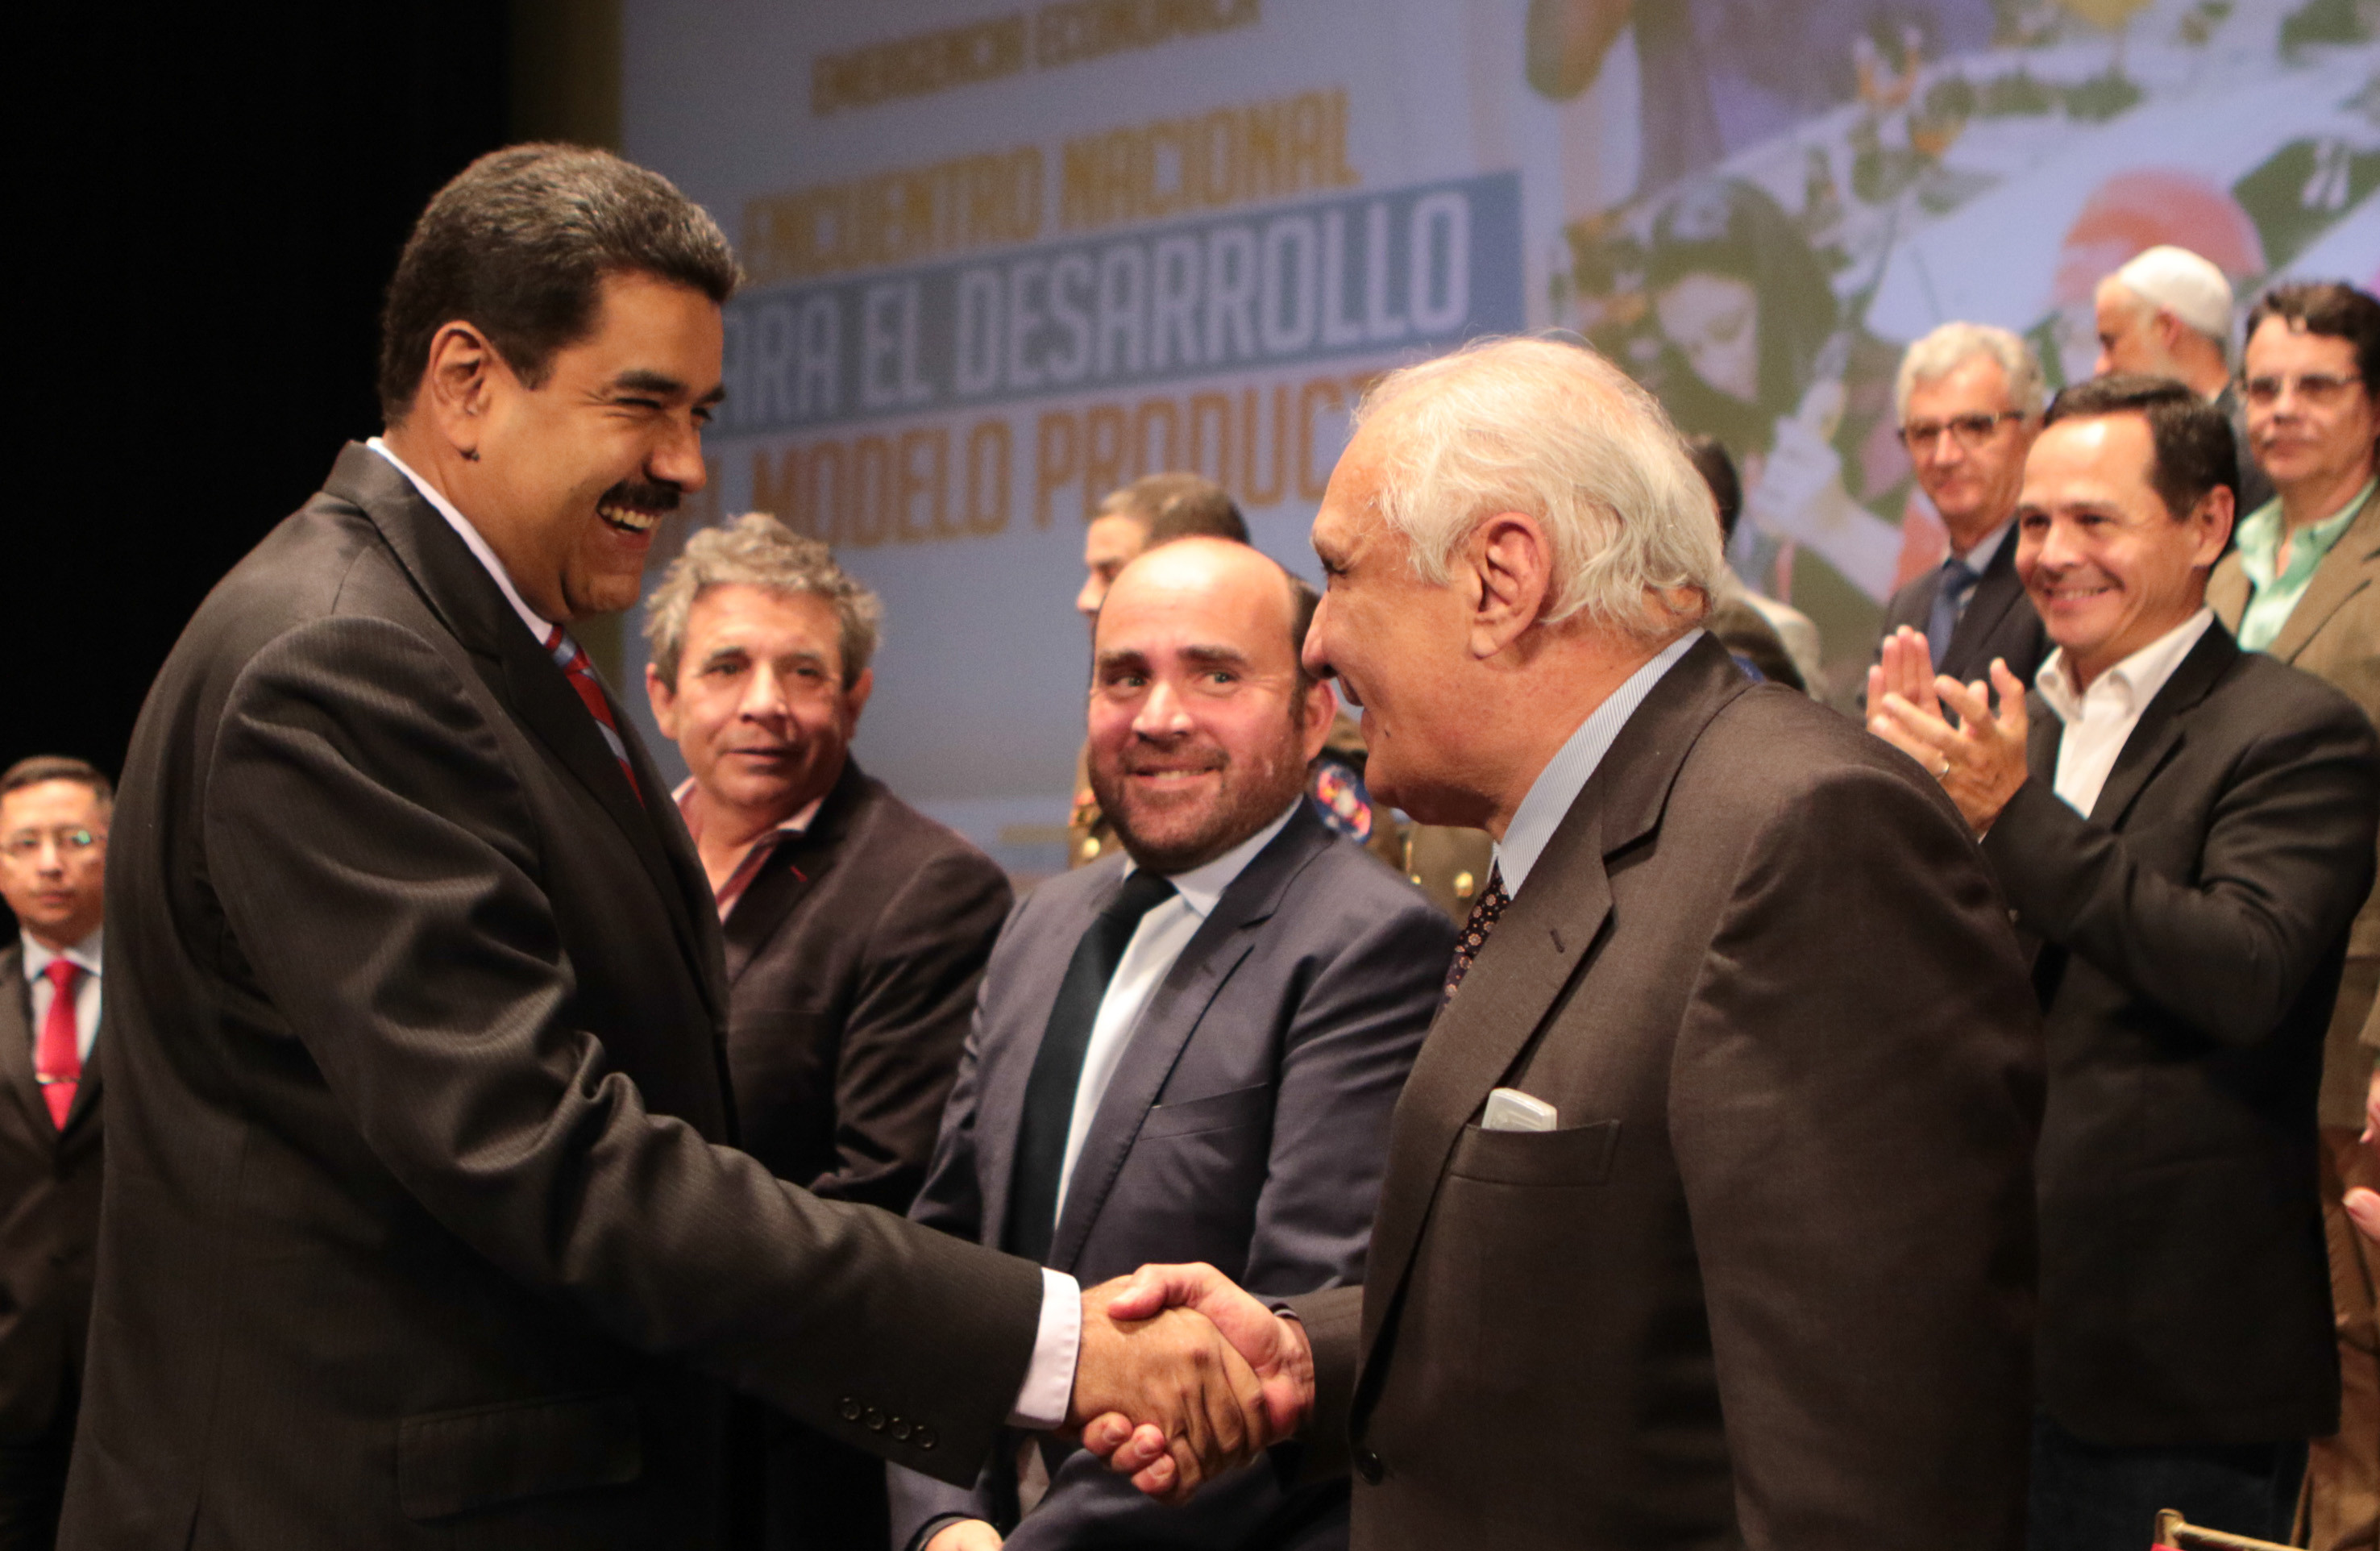 Empresarios venezolanos aportarán al nuevo modelo productivo al servicio del pueblo.